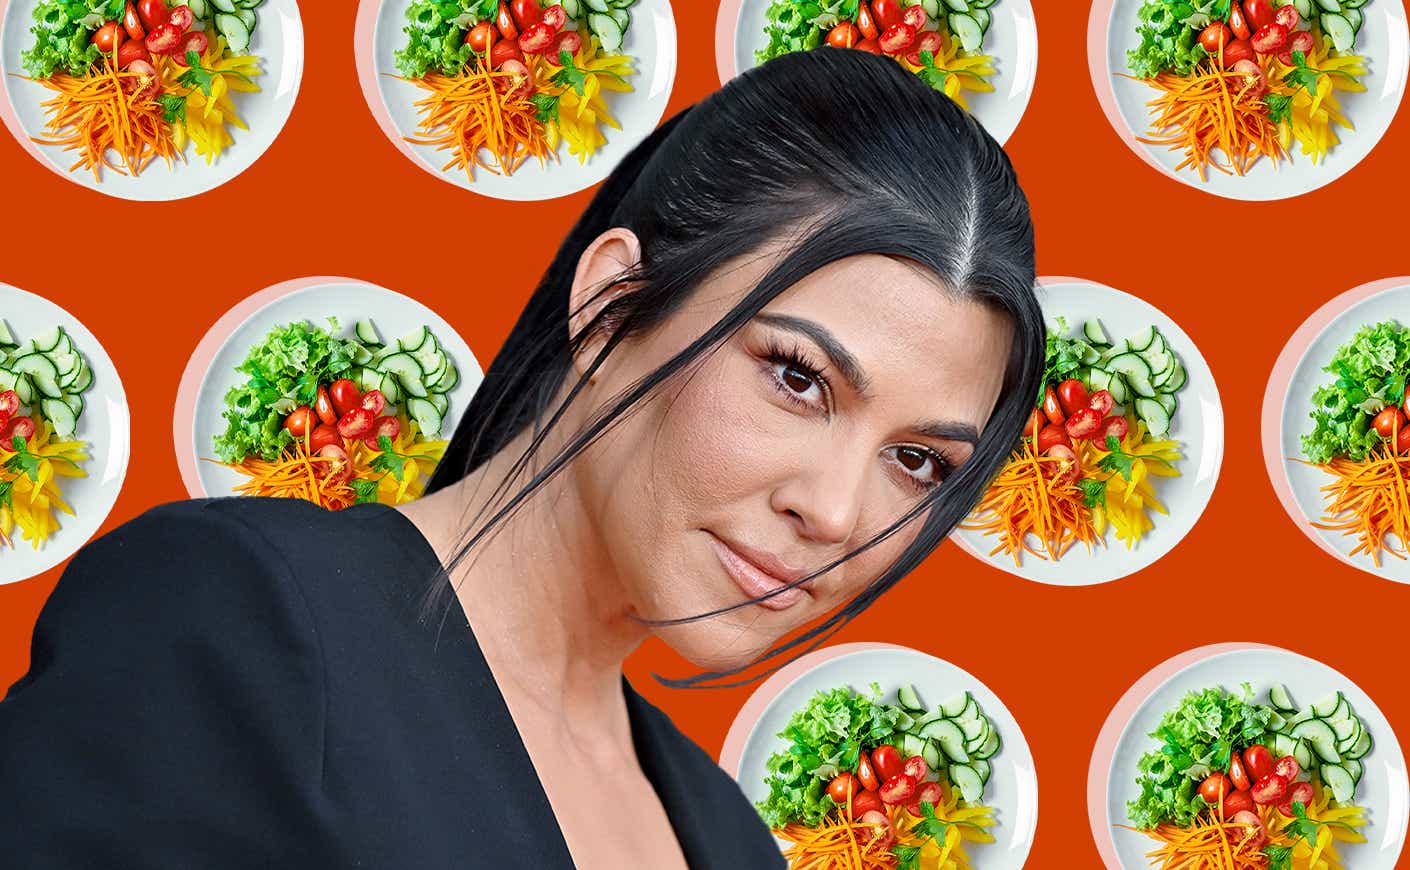 Kourtney Kardashian with salad